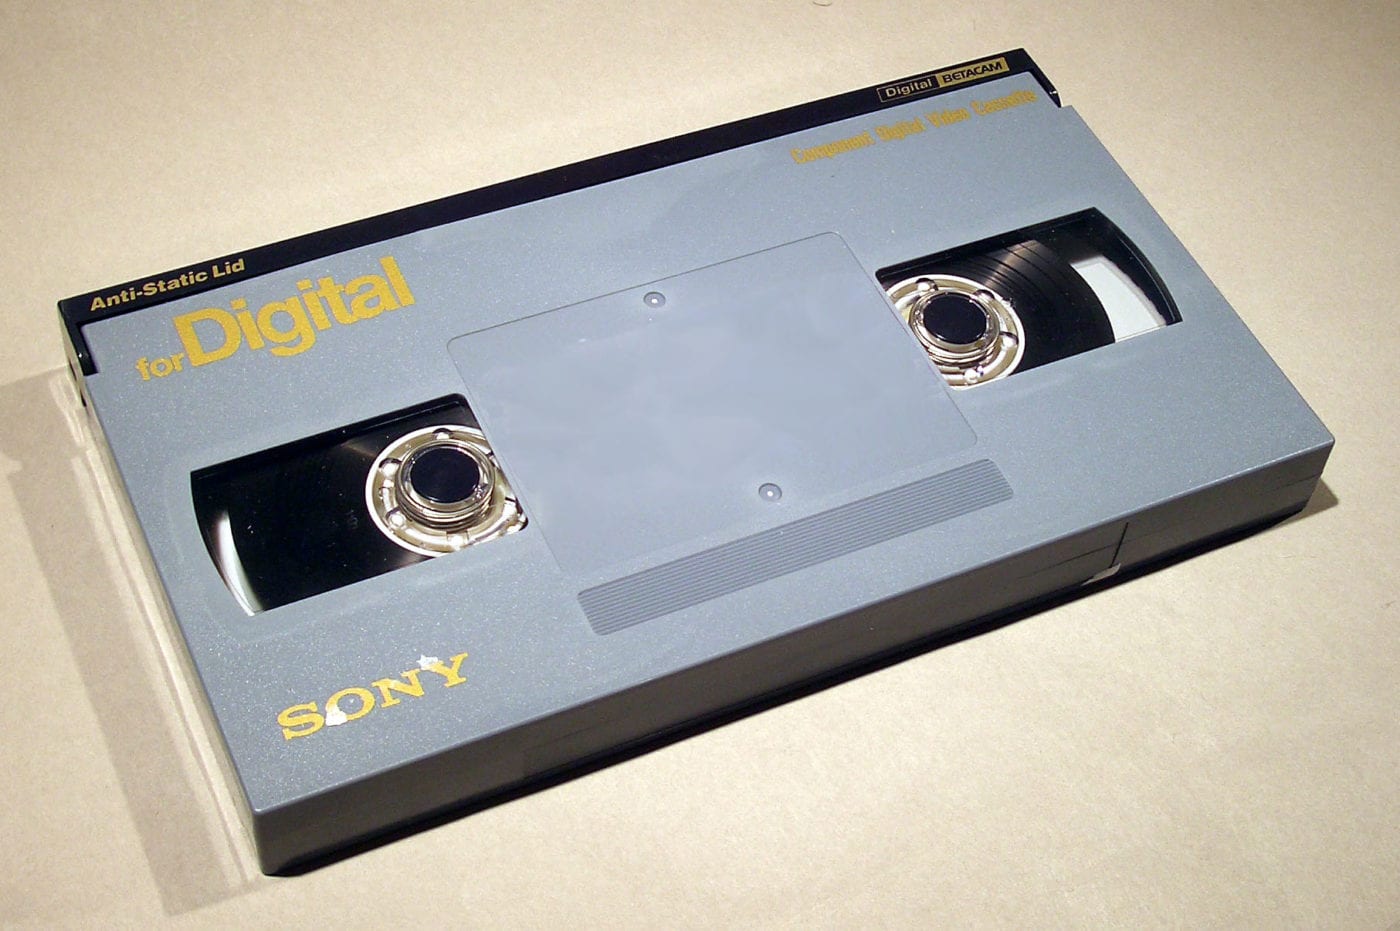 Digital Betacam tape.